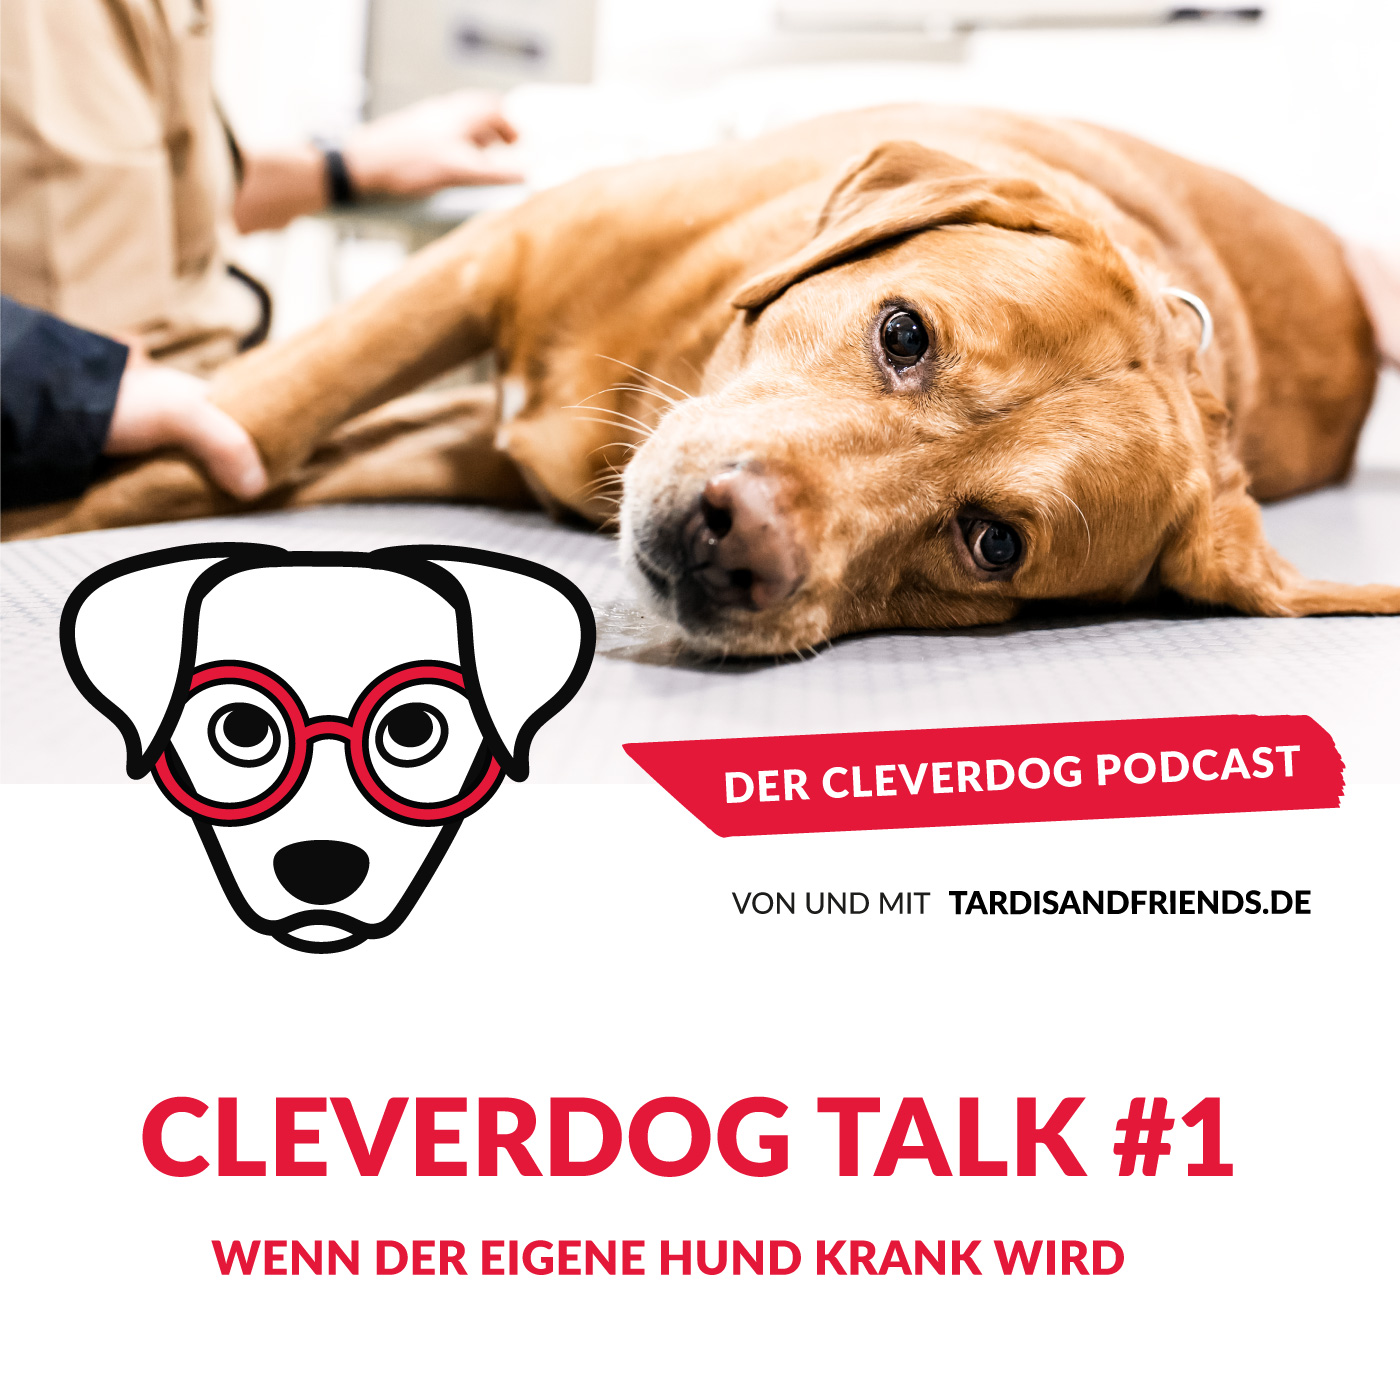 Cleverdog Talk #1 – Wenn der eigene Hund krank wird